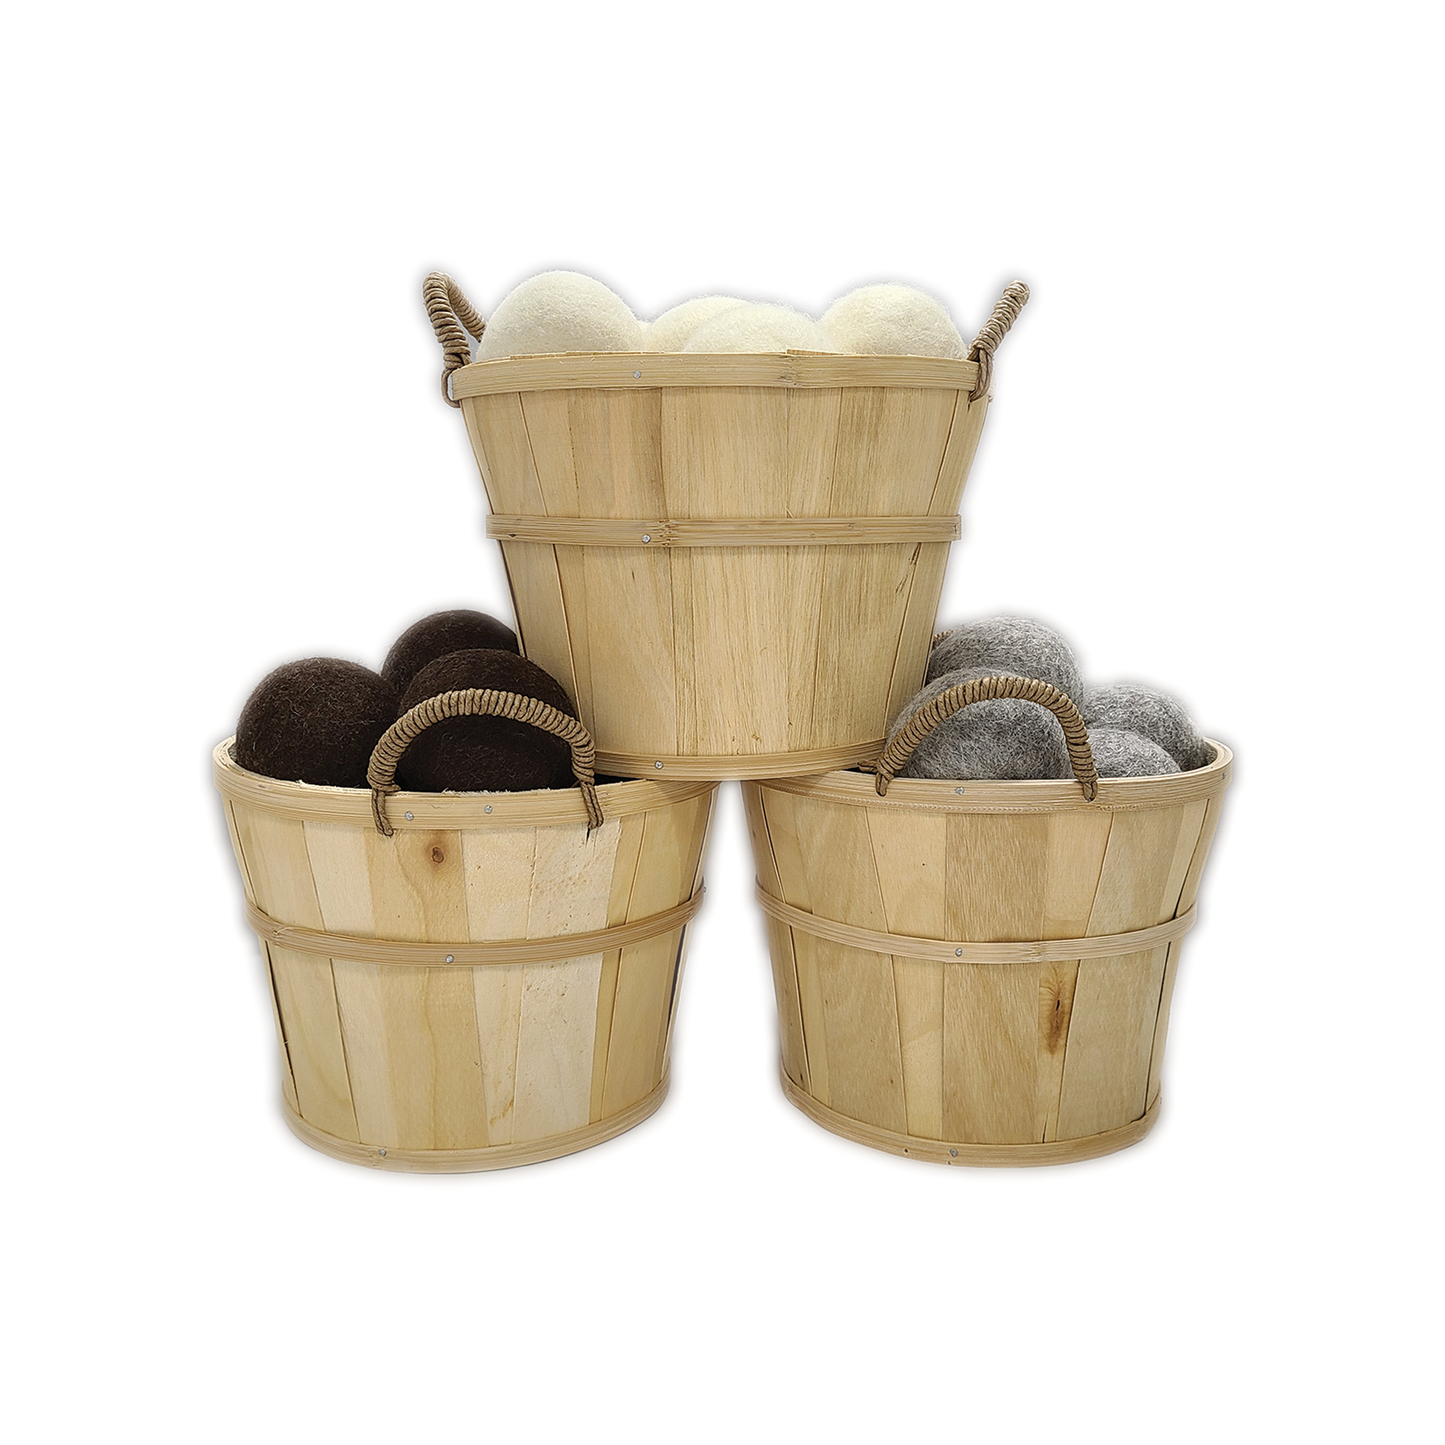 "Zero Waste" Starter Set + 3 Small Baskets & Lamb